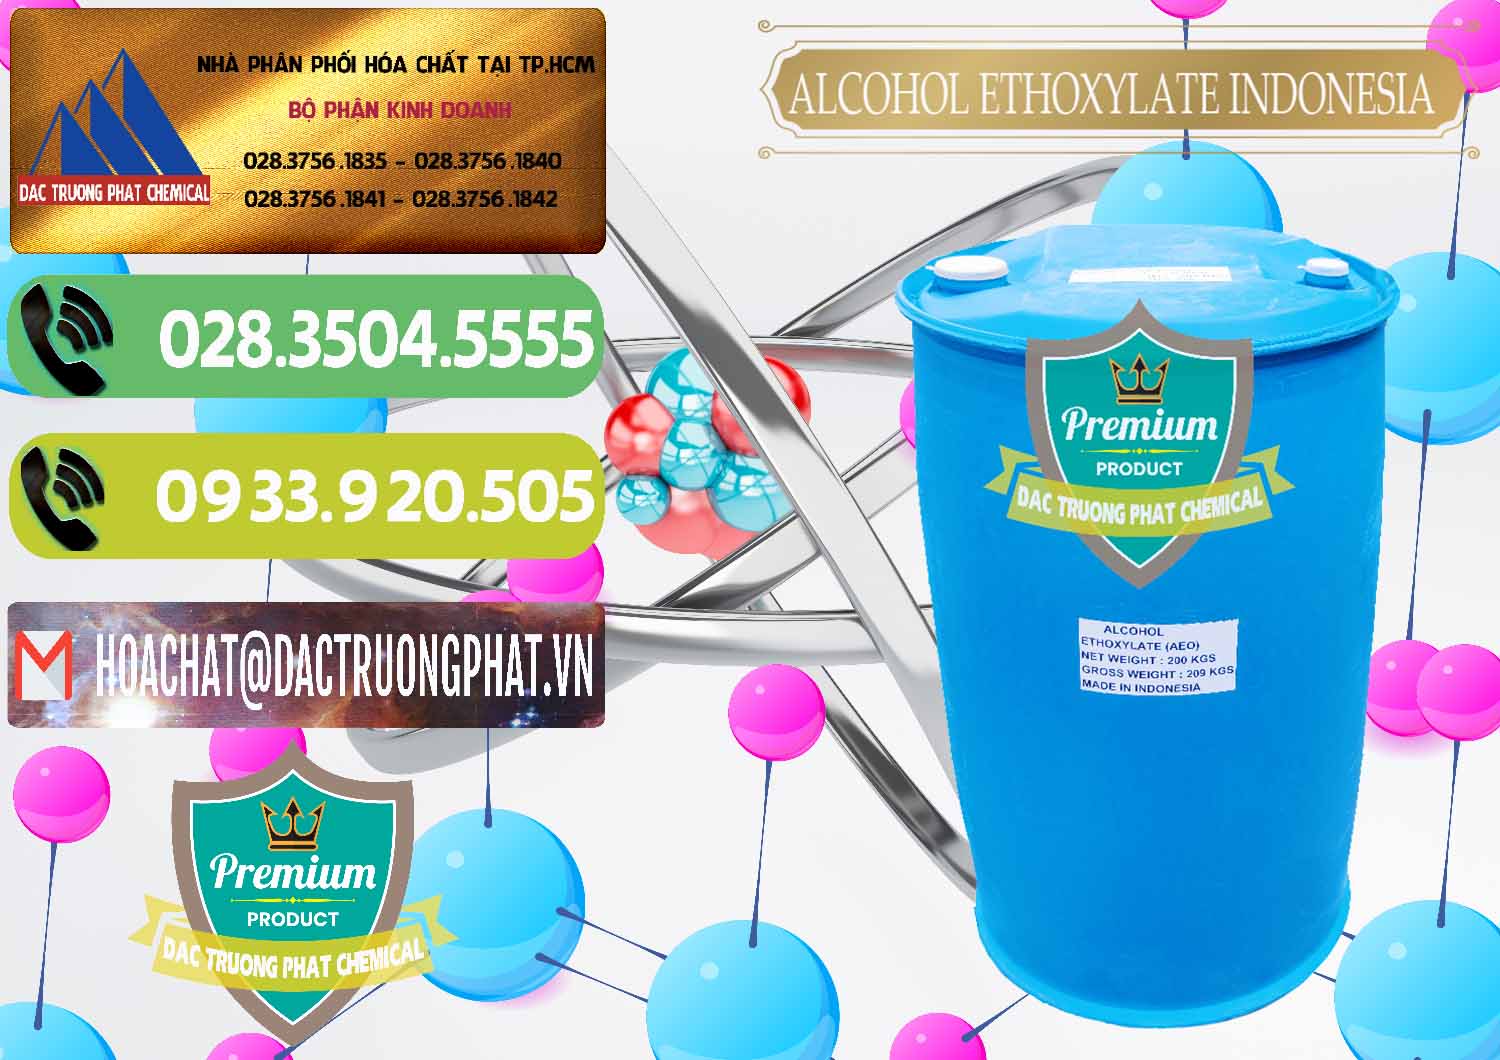 Cty bán - cung ứng Alcohol Ethoxylate Indonesia - 0308 - Chuyên cung cấp và kinh doanh hóa chất tại TP.HCM - hoachatmientay.vn